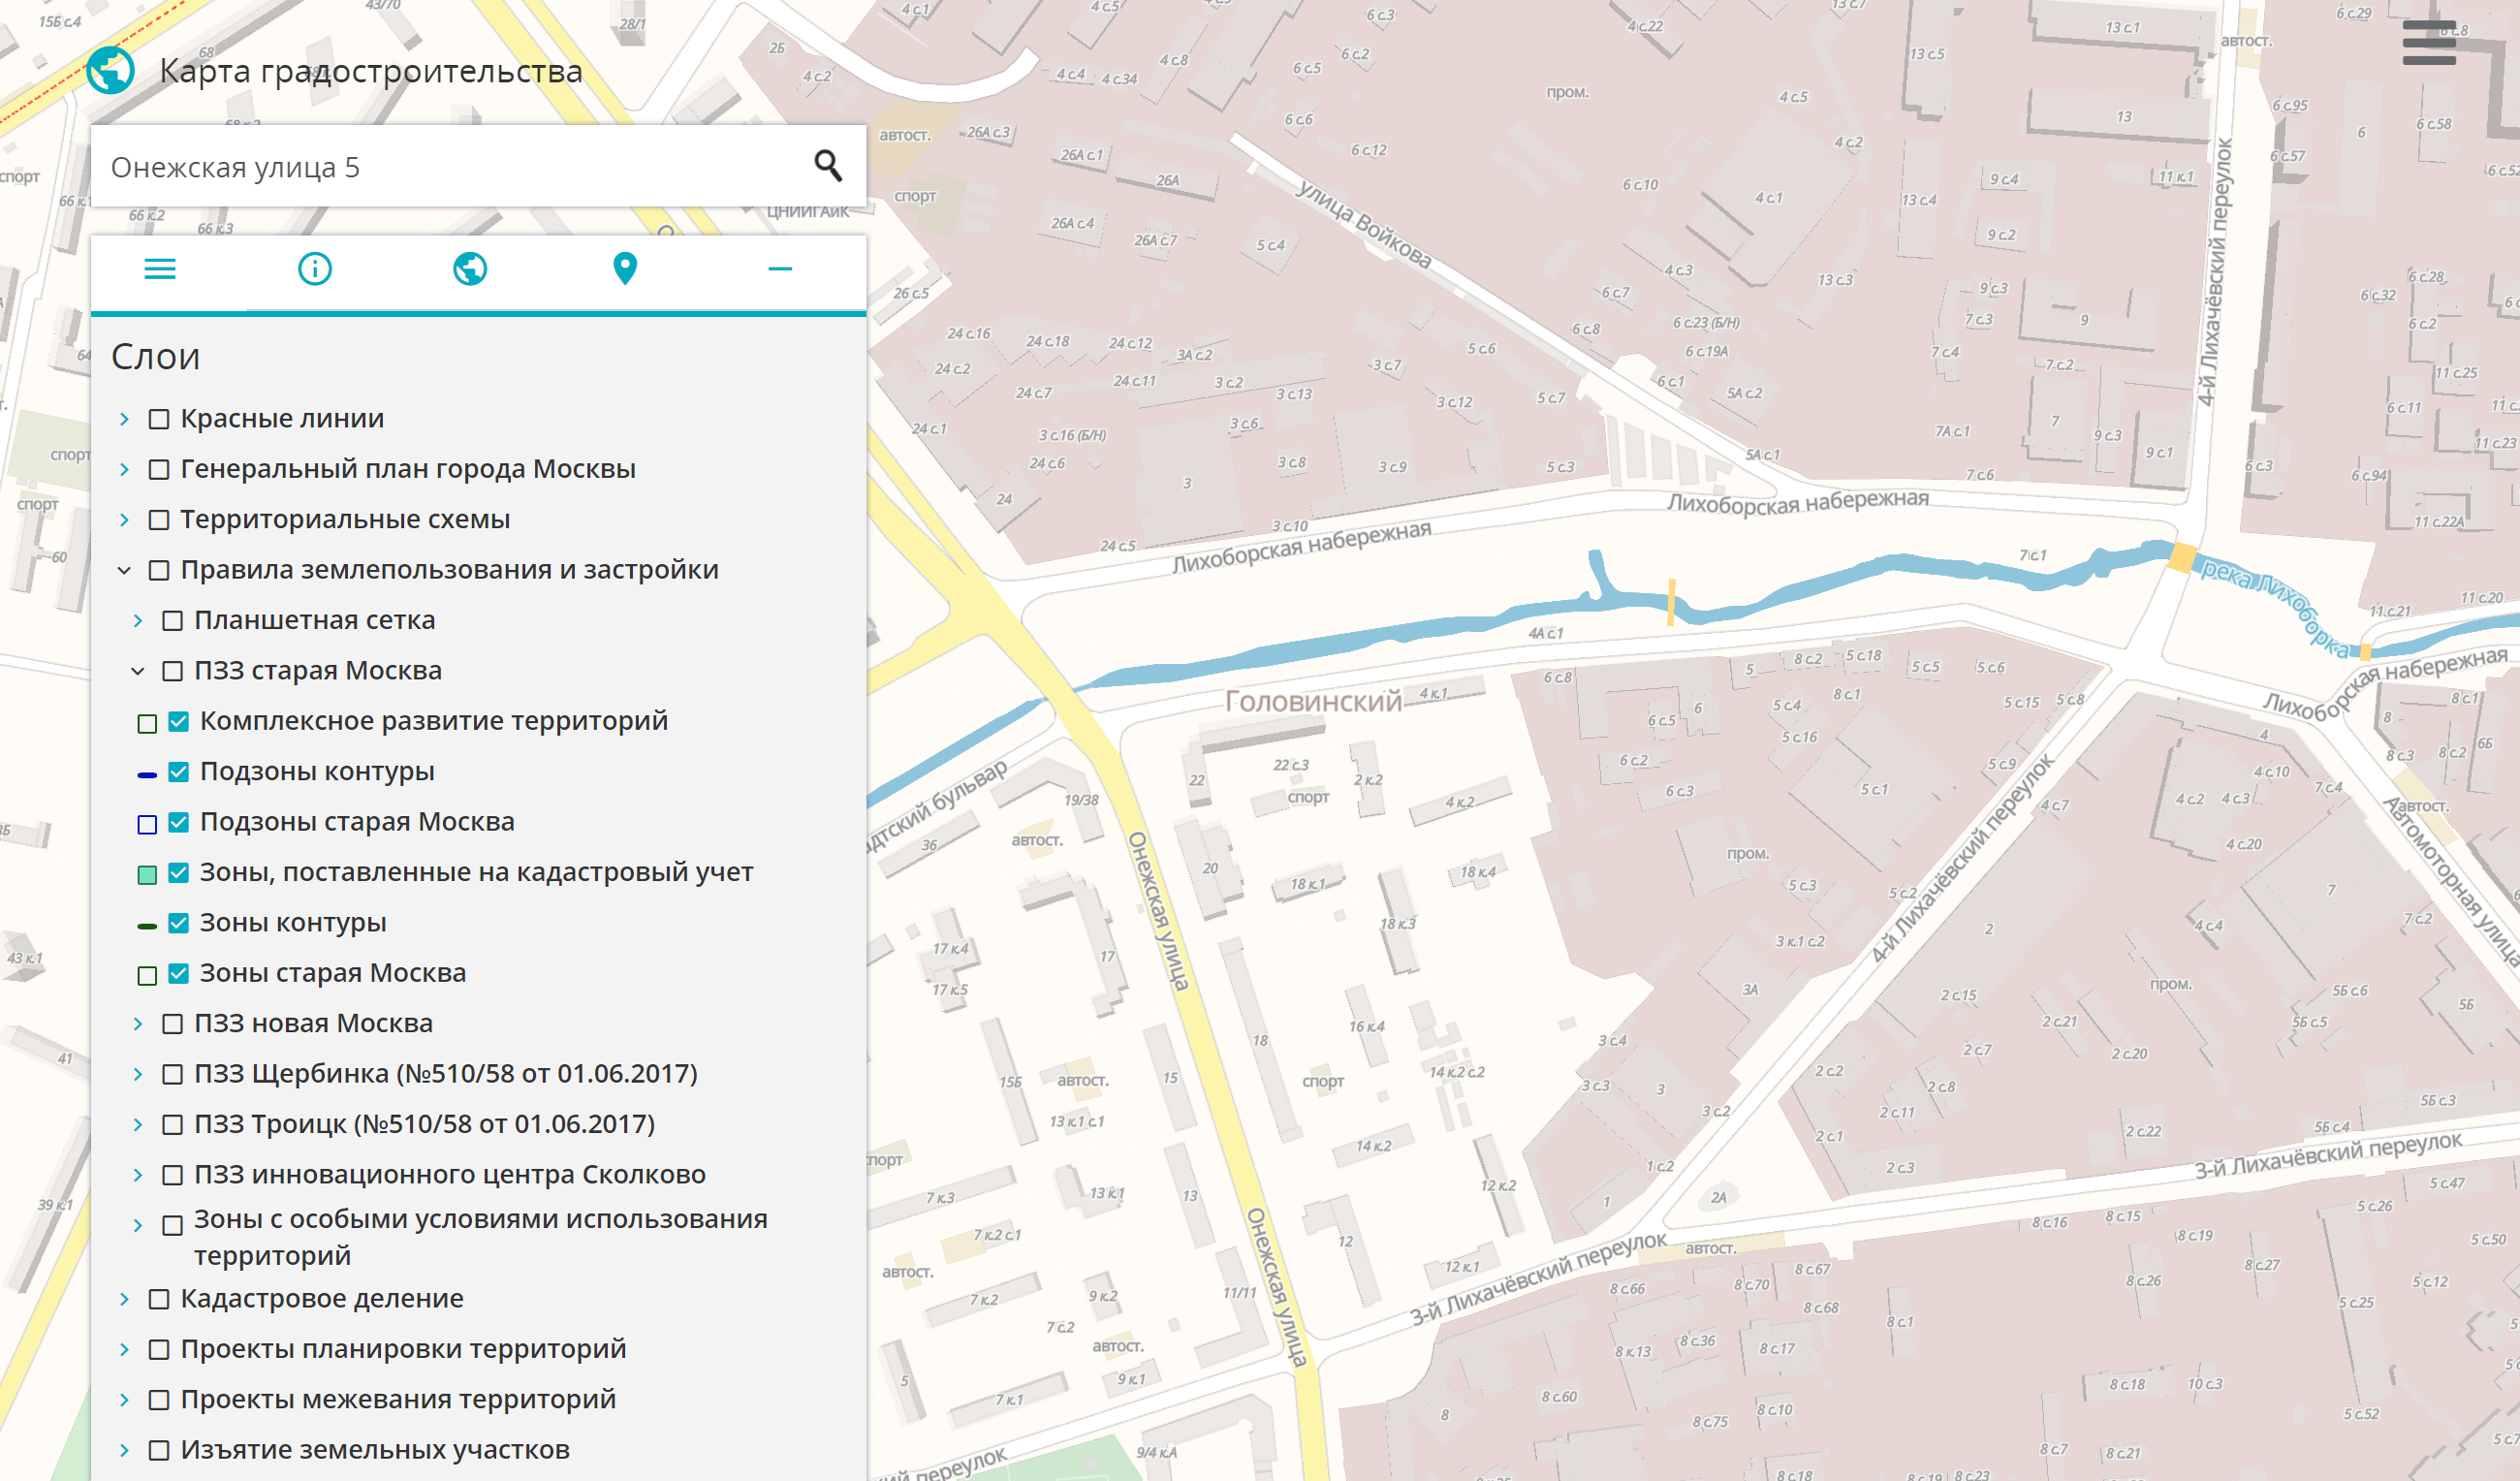 Это карта градостроительства на портале ИАИС ОГД Москвы. Чтобы на карте отобразилось КРТ, необходимо в разделе «Слои» выбрать ПЗЗ и отметить «Комплексное развитие территорий»